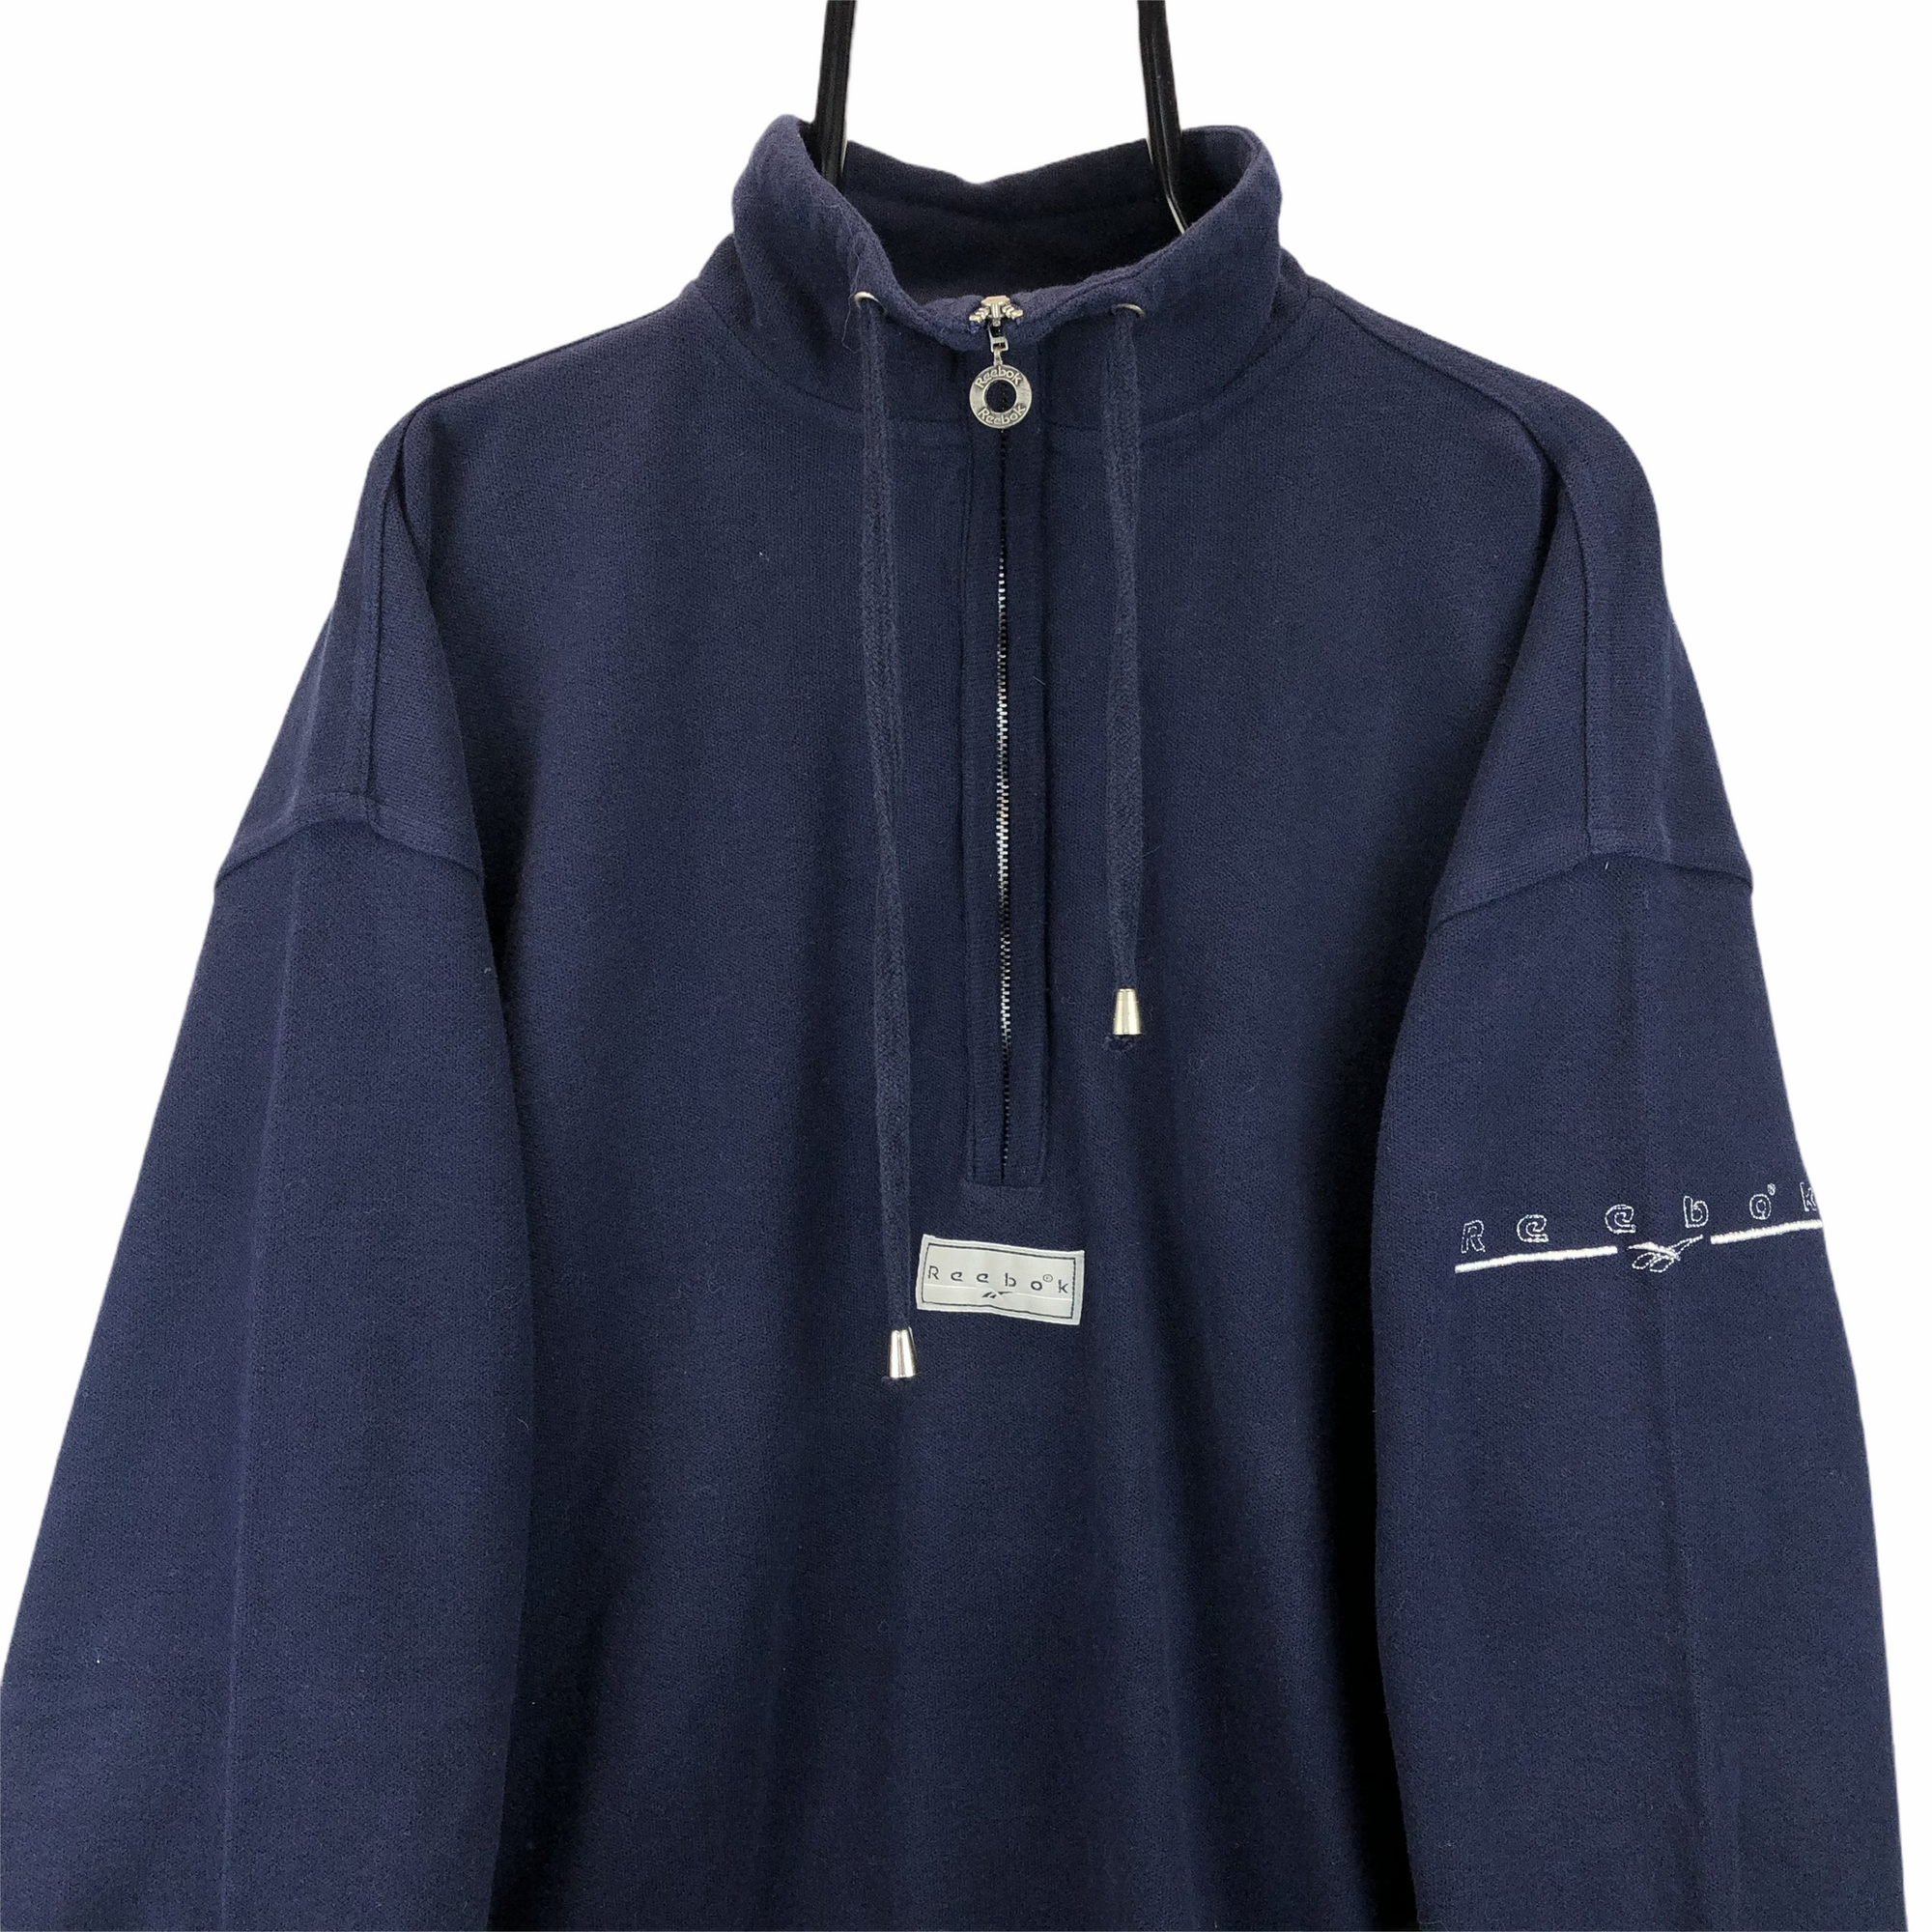 Vintage 90s Reebok 1/4 Zip Sweatshirt in Navy - Men's XL/Women's XXL